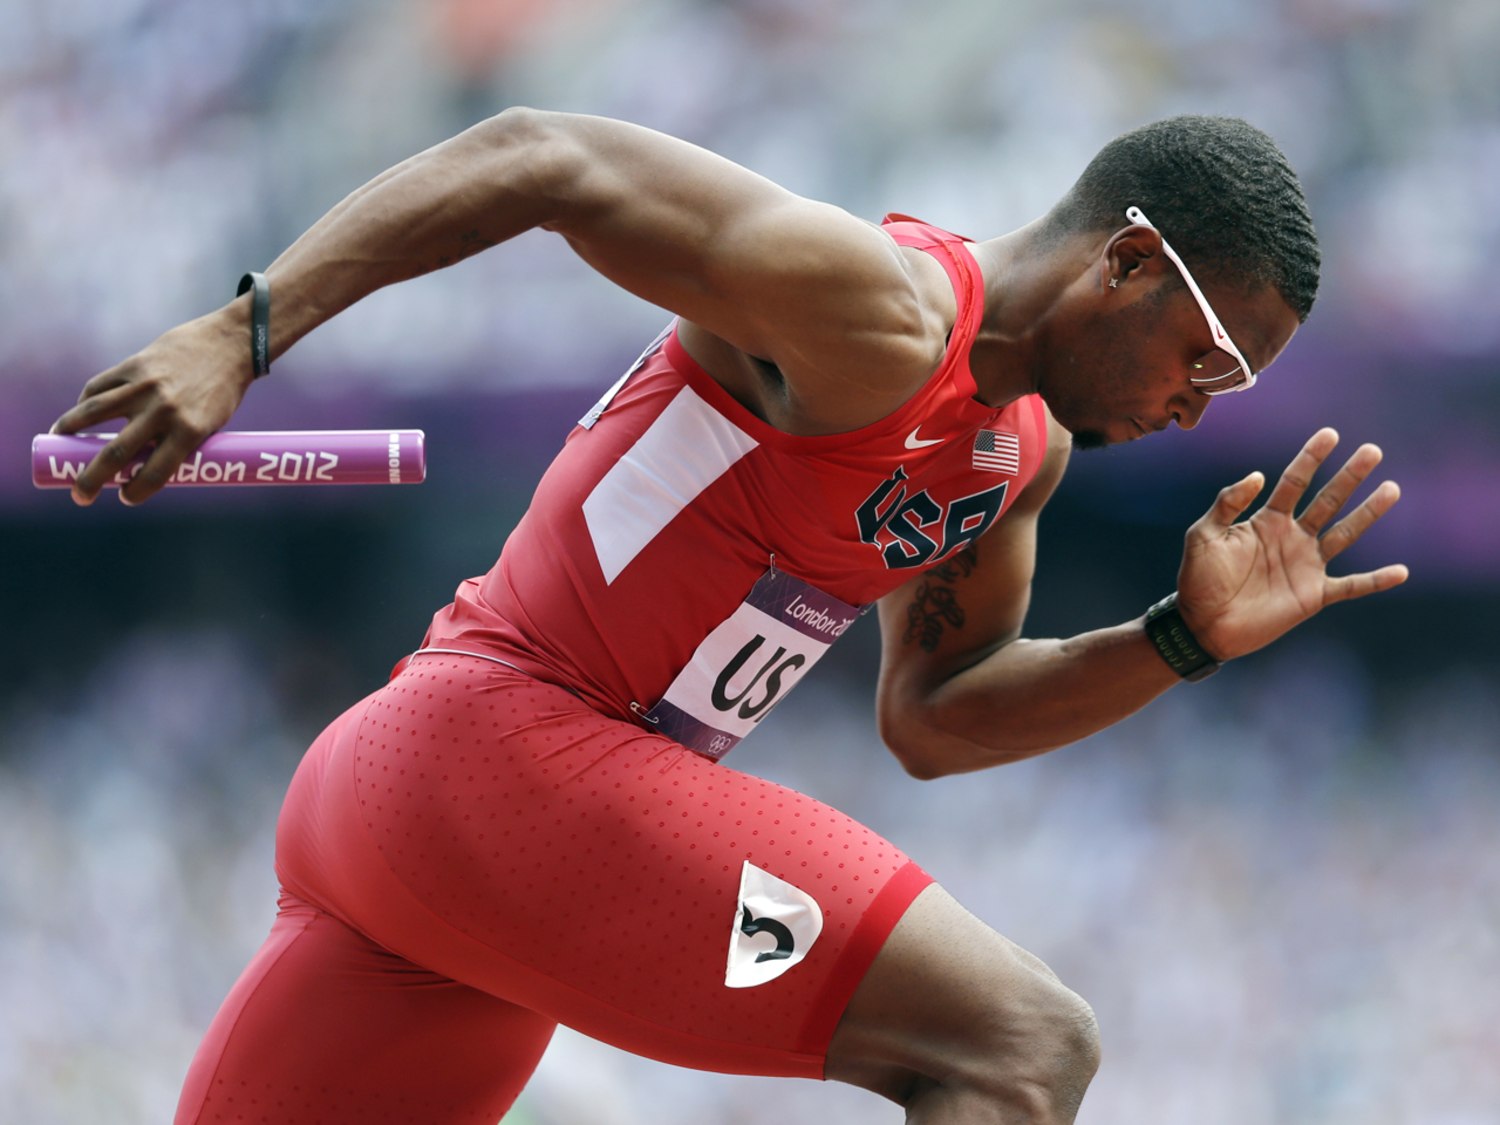 How'd he do that? Olympic sprinter breaks leg, keeps running